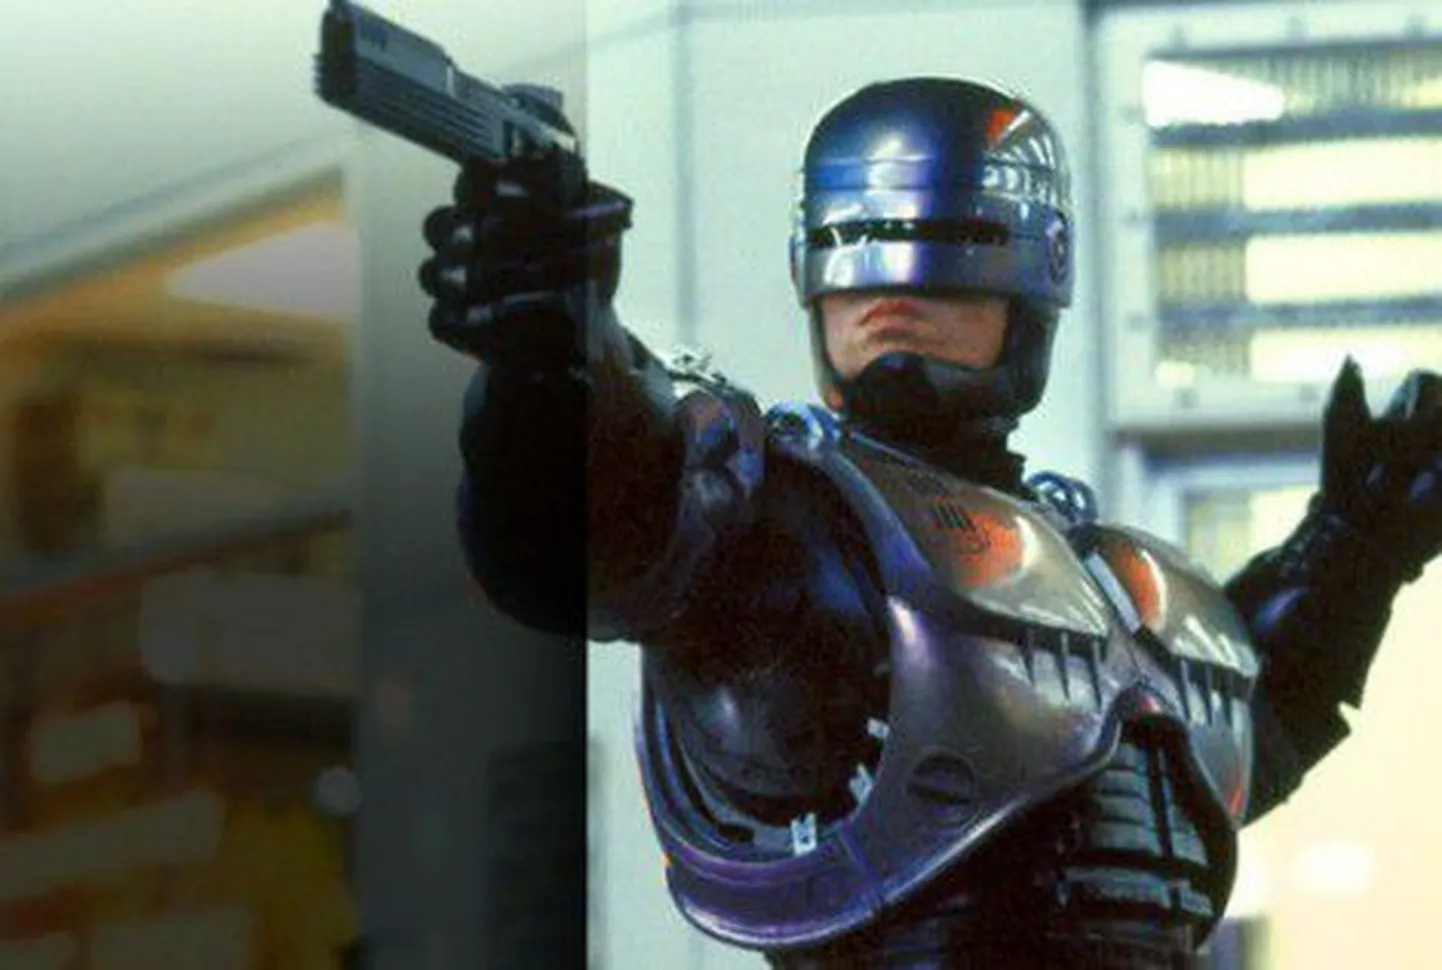 Кадр из фильма "Робокоп" 1987 года